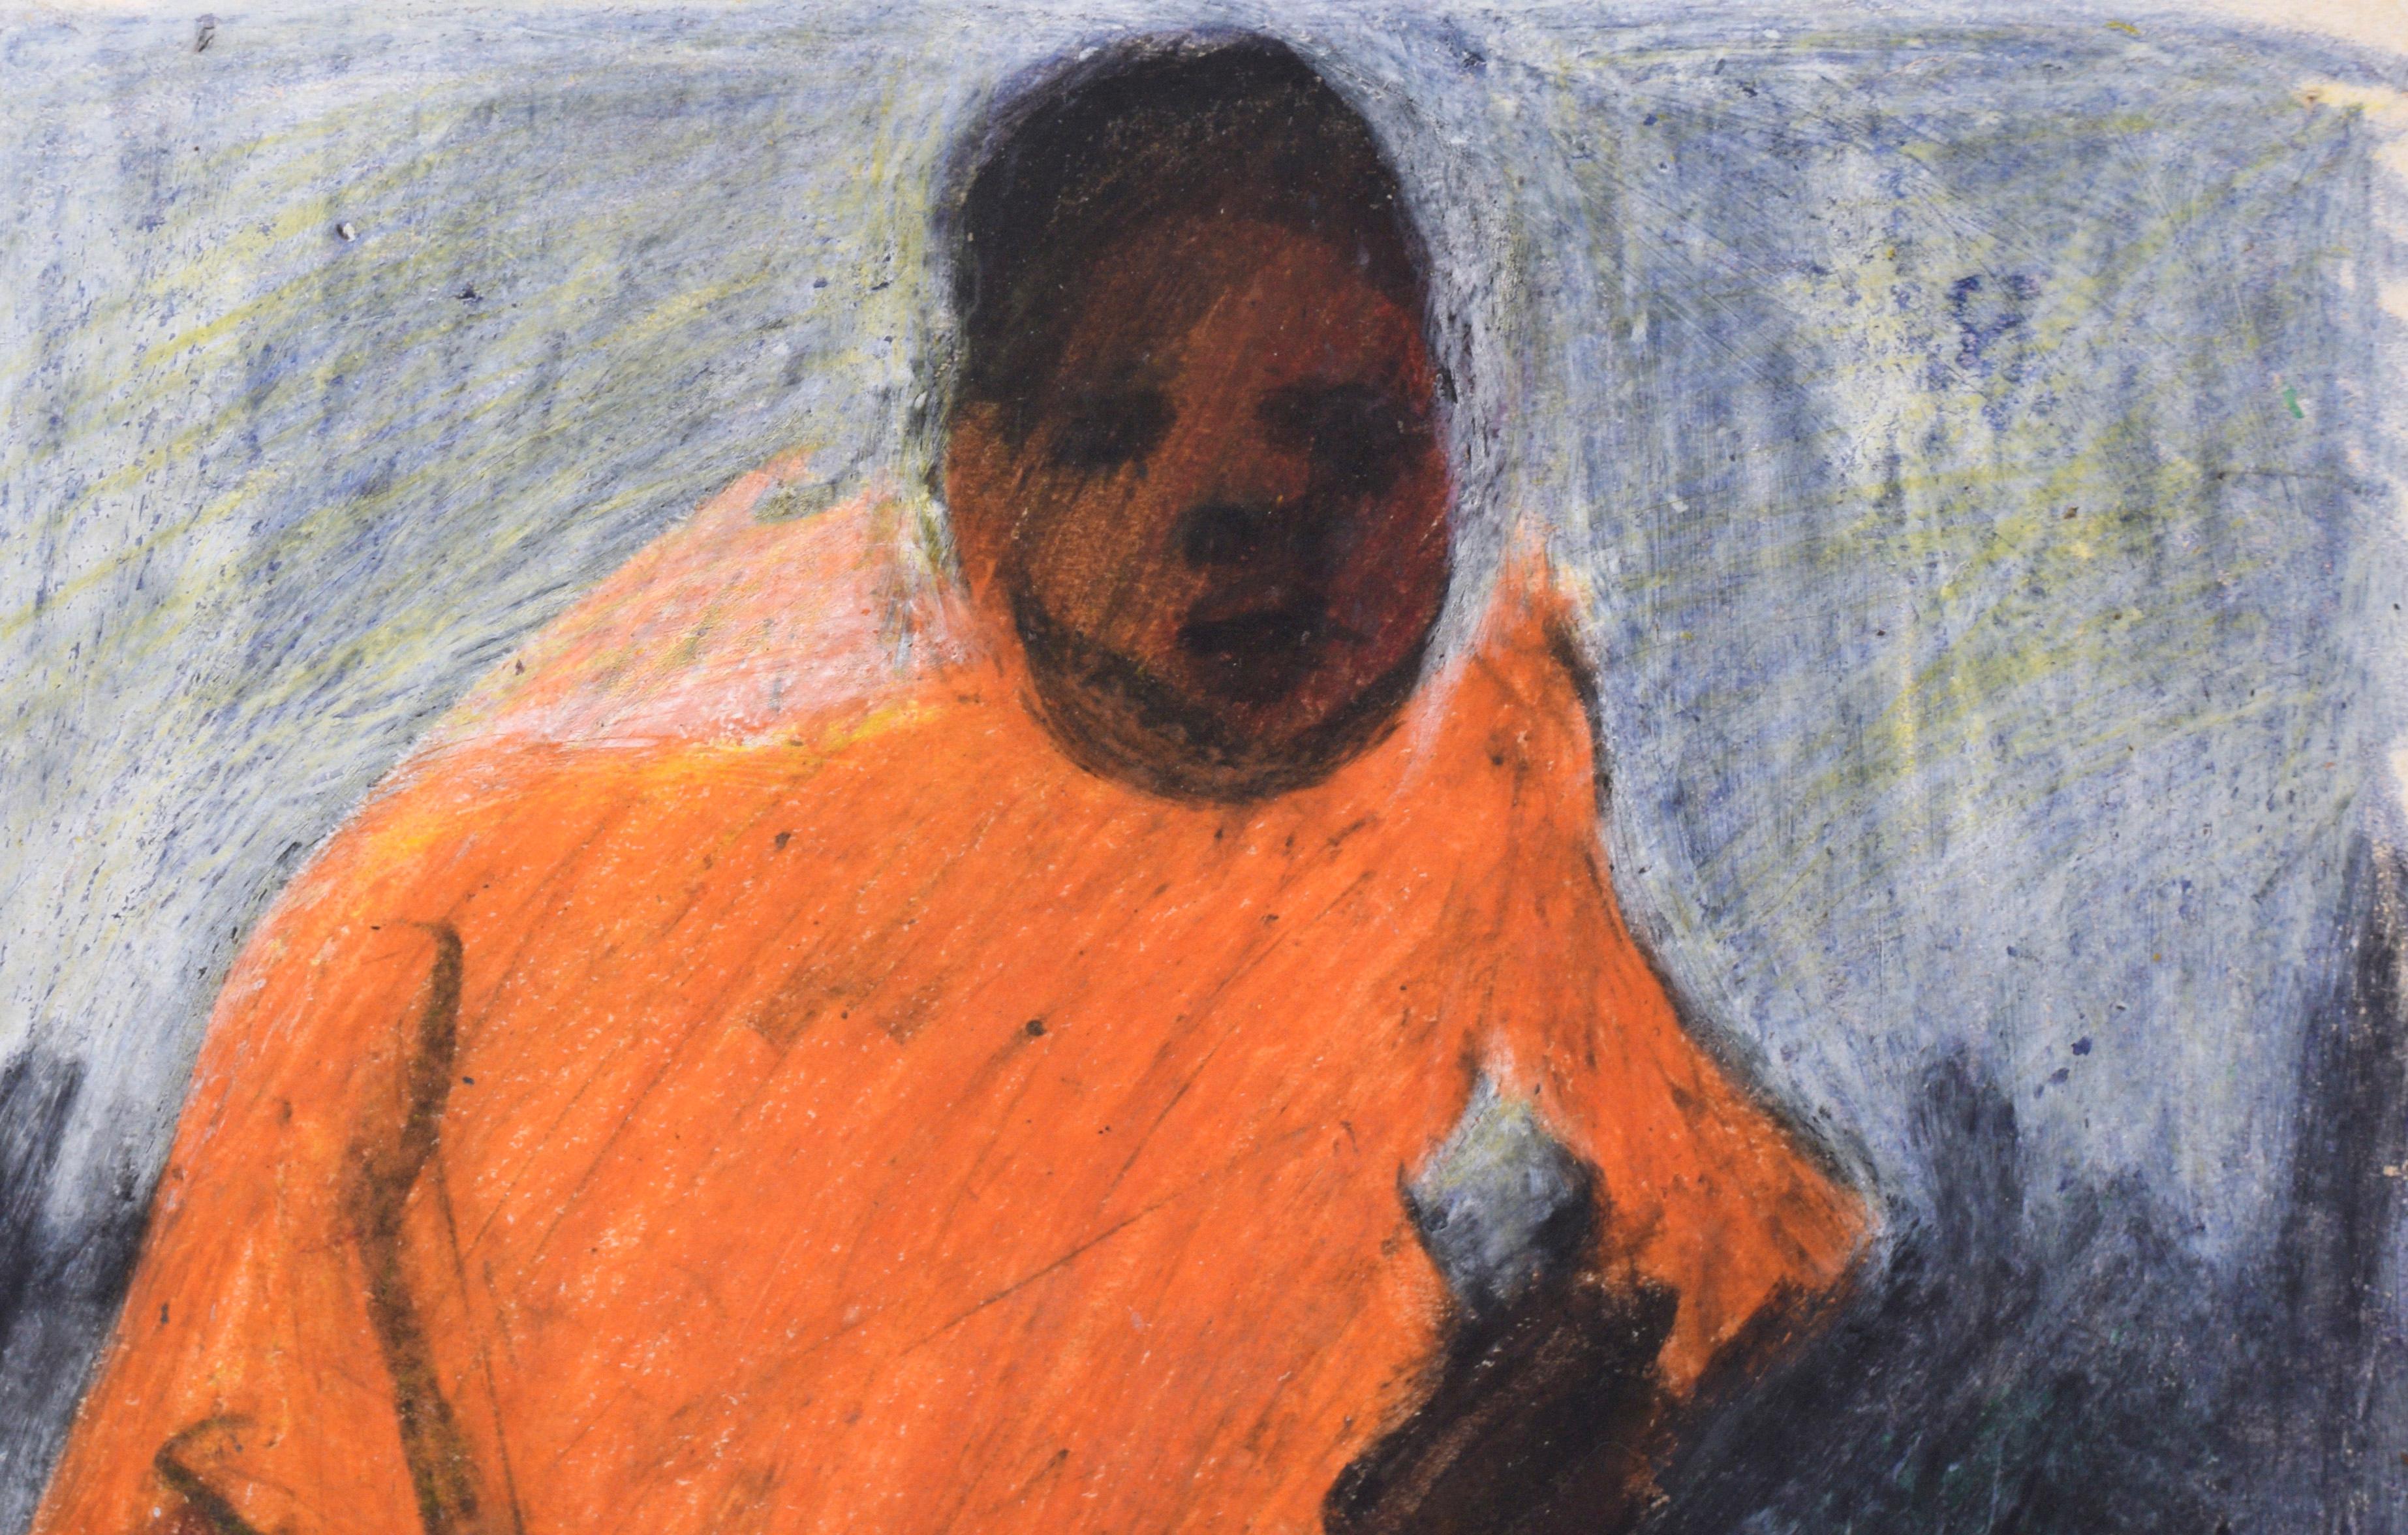 Track Star - Portrait abstrait d'un homme afro-américain au pastel sur papier

Dessin au pastel audacieux et imaginatif d'un homme en survêtement par un artiste inconnu (20e siècle). Un homme afro-américain se tient sur une piste de course, vêtu